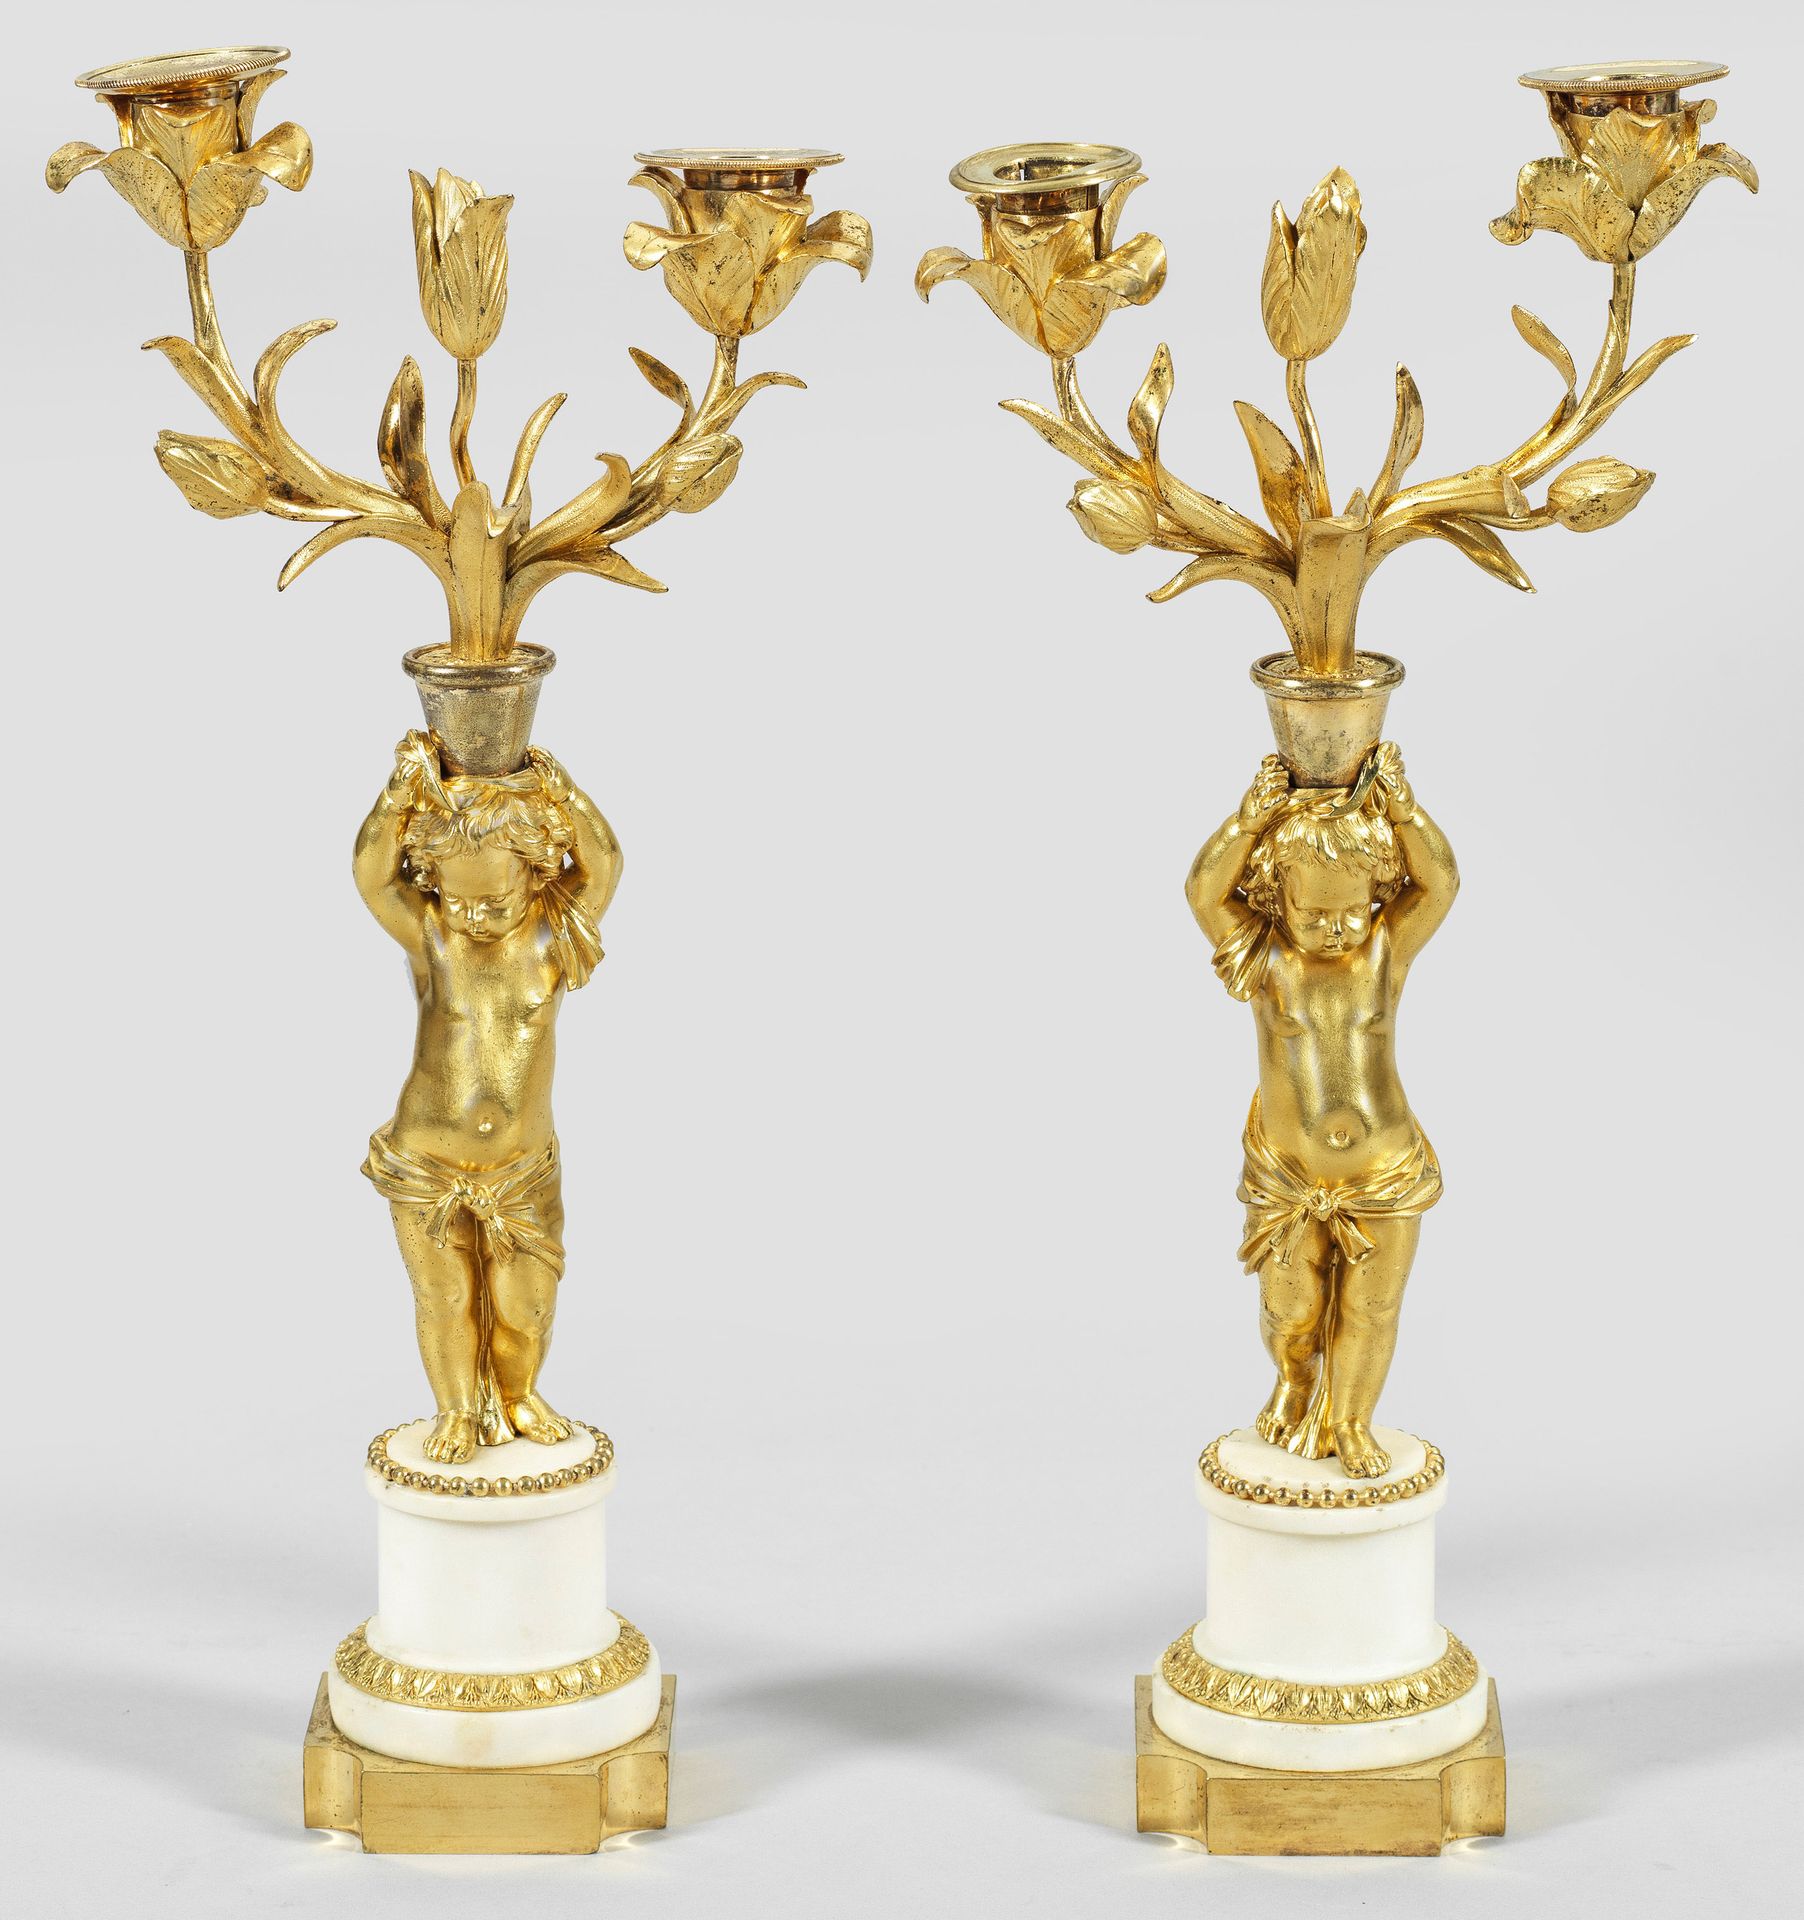 Null 一对路易十六时期的双灯对联。双灯；青铜、鎏金和白色大理石。短柱轴上有精细浮雕的棕榈楣和珍珠饰，柱轴上方是凹角的平基座。上方是一个雕刻完整的普托，作为花&hellip;